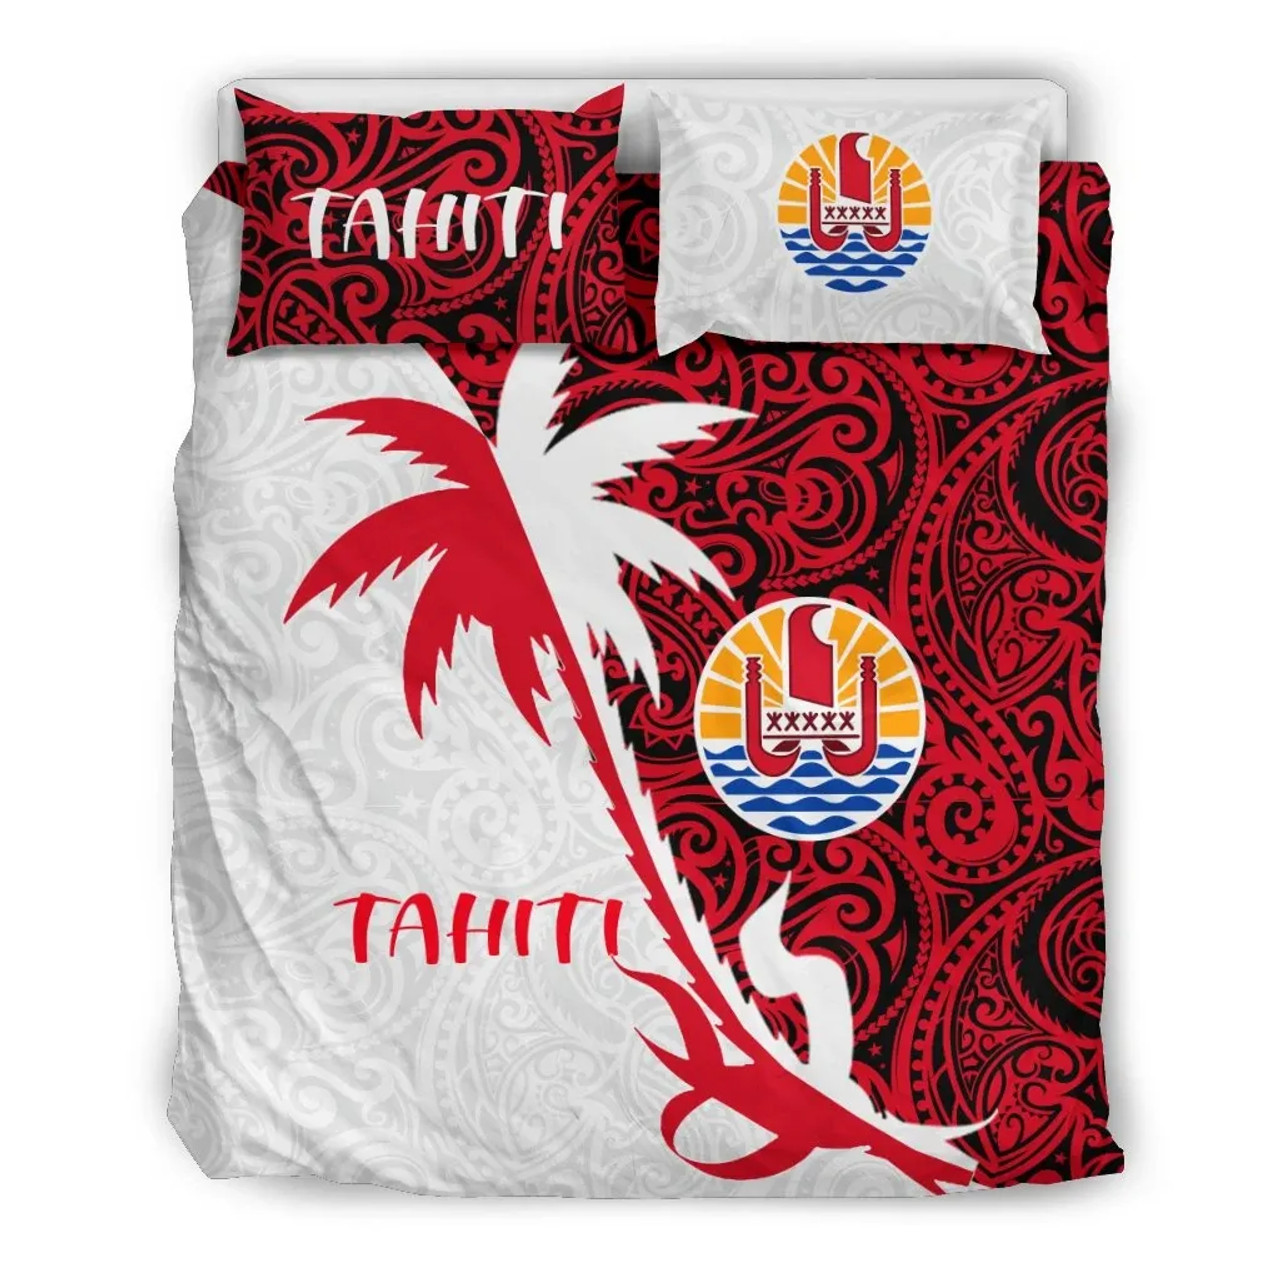 Tahiti Duvet Cover Set - Tahiti Coat Of Arms & Coconut Tree 2